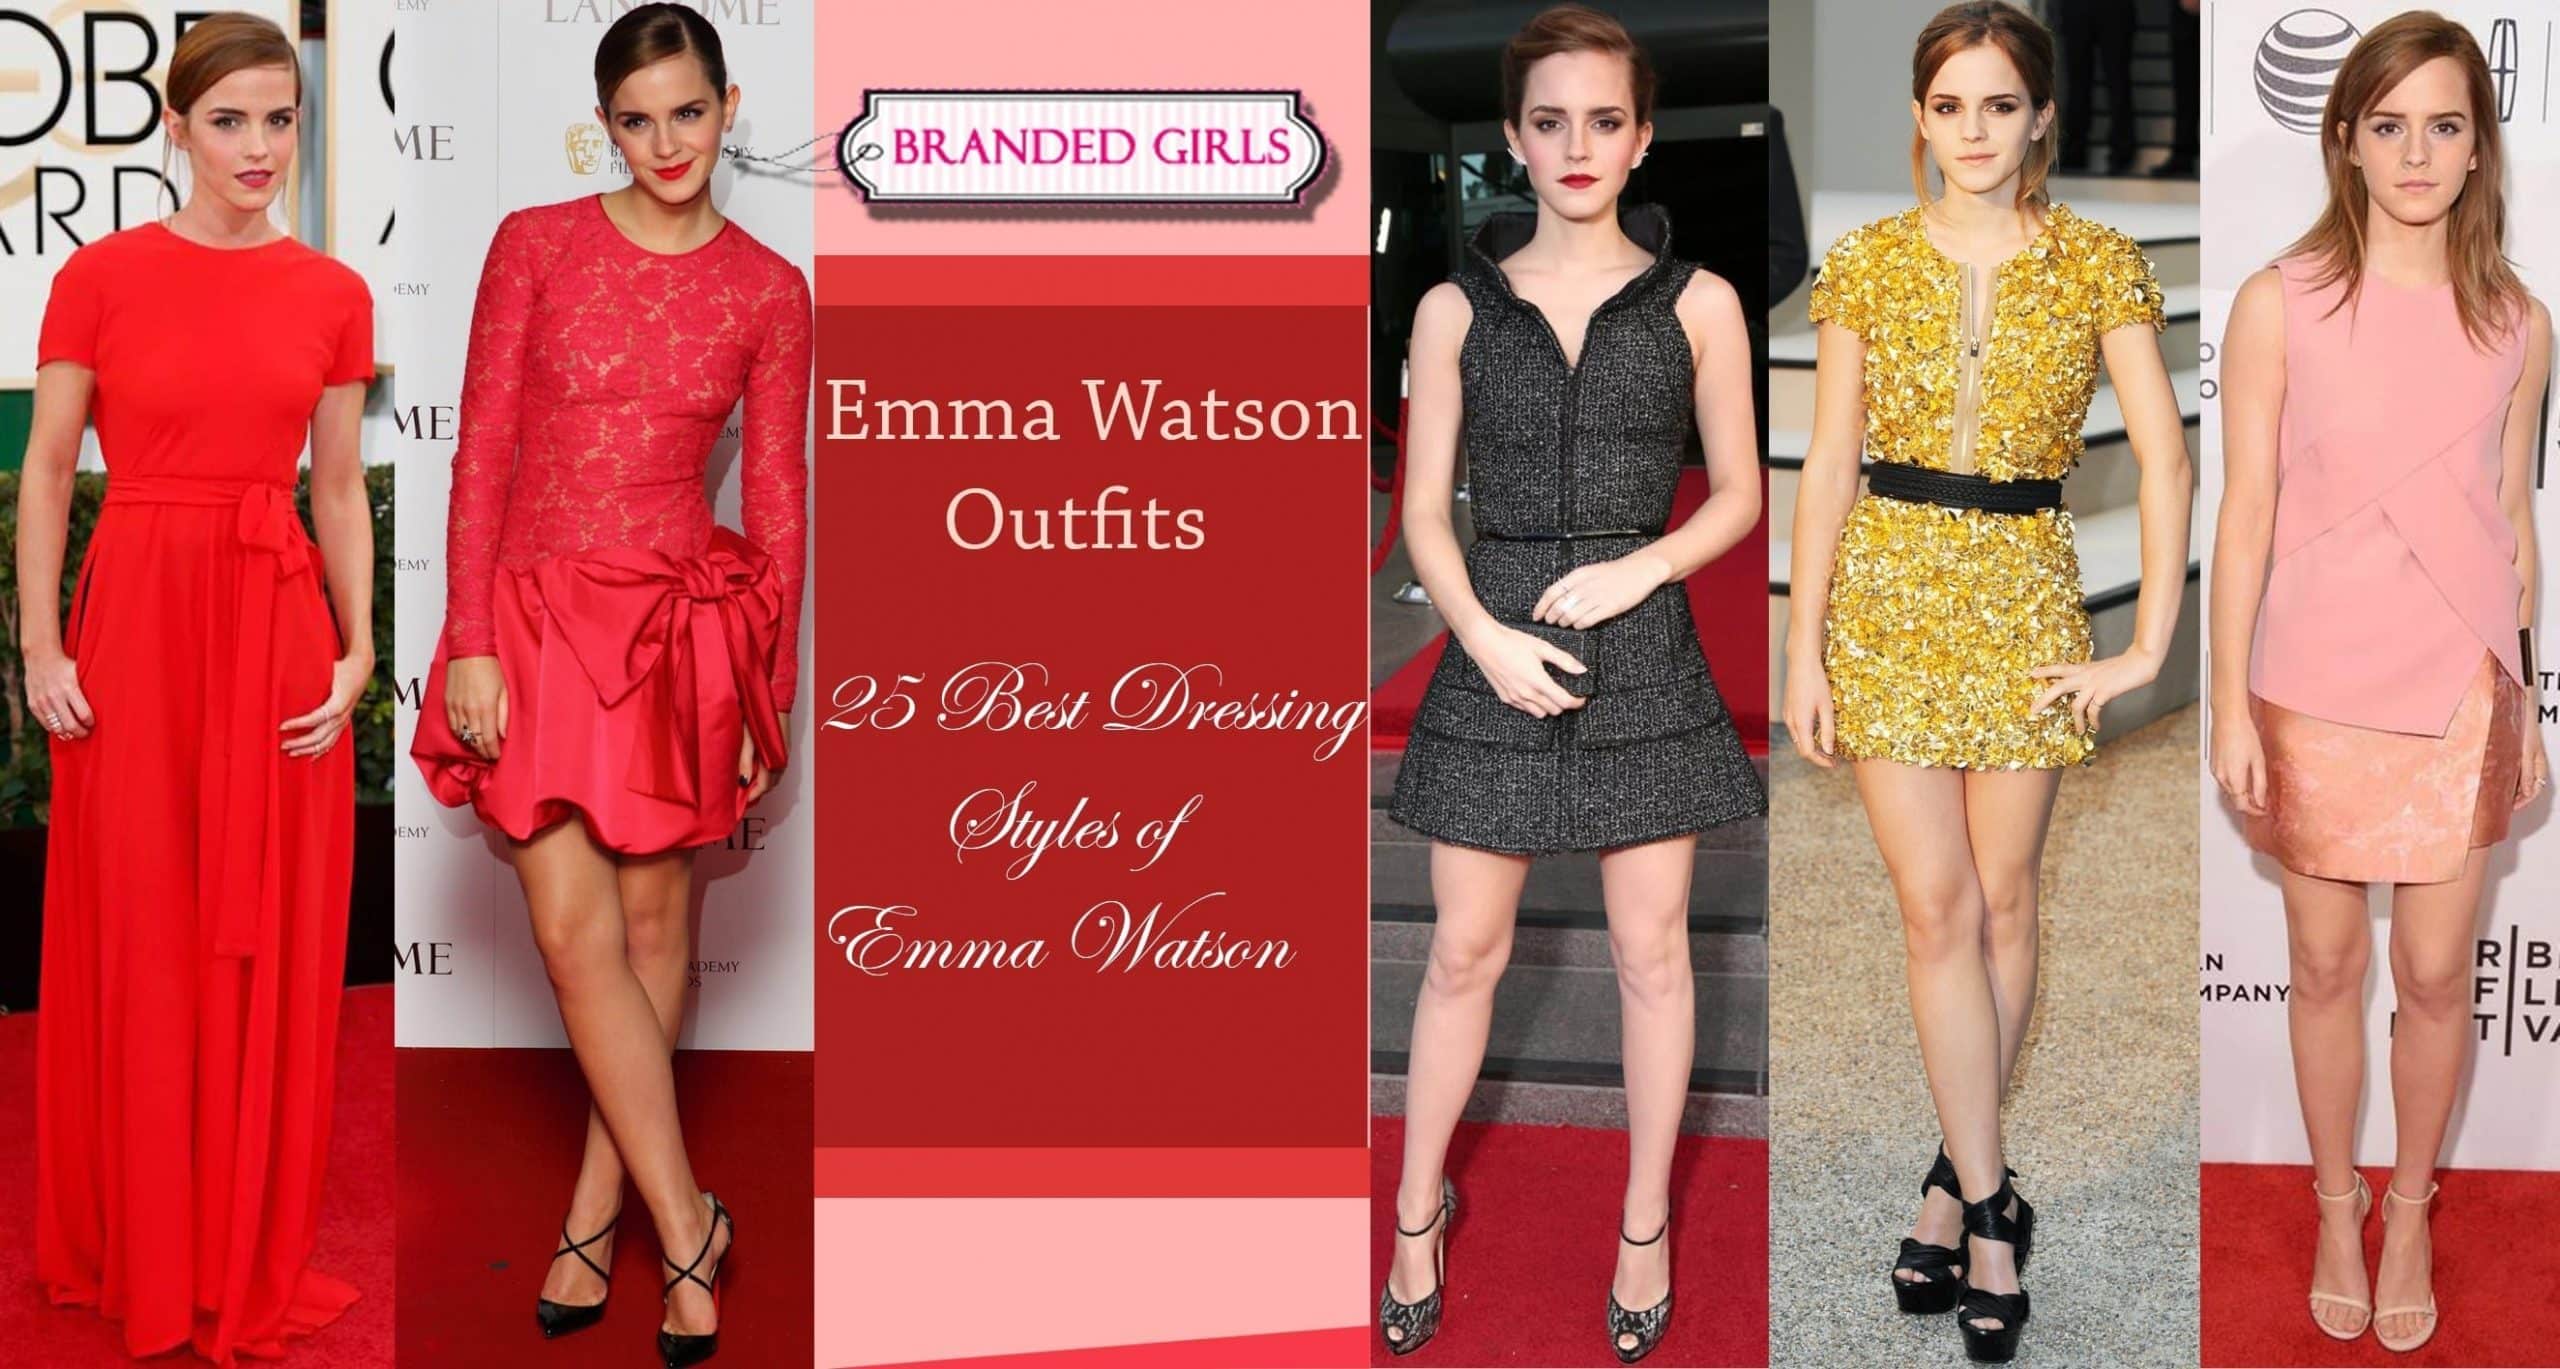 Emma Watson Outfits – 25 Best Dressing Style of Emma Watson